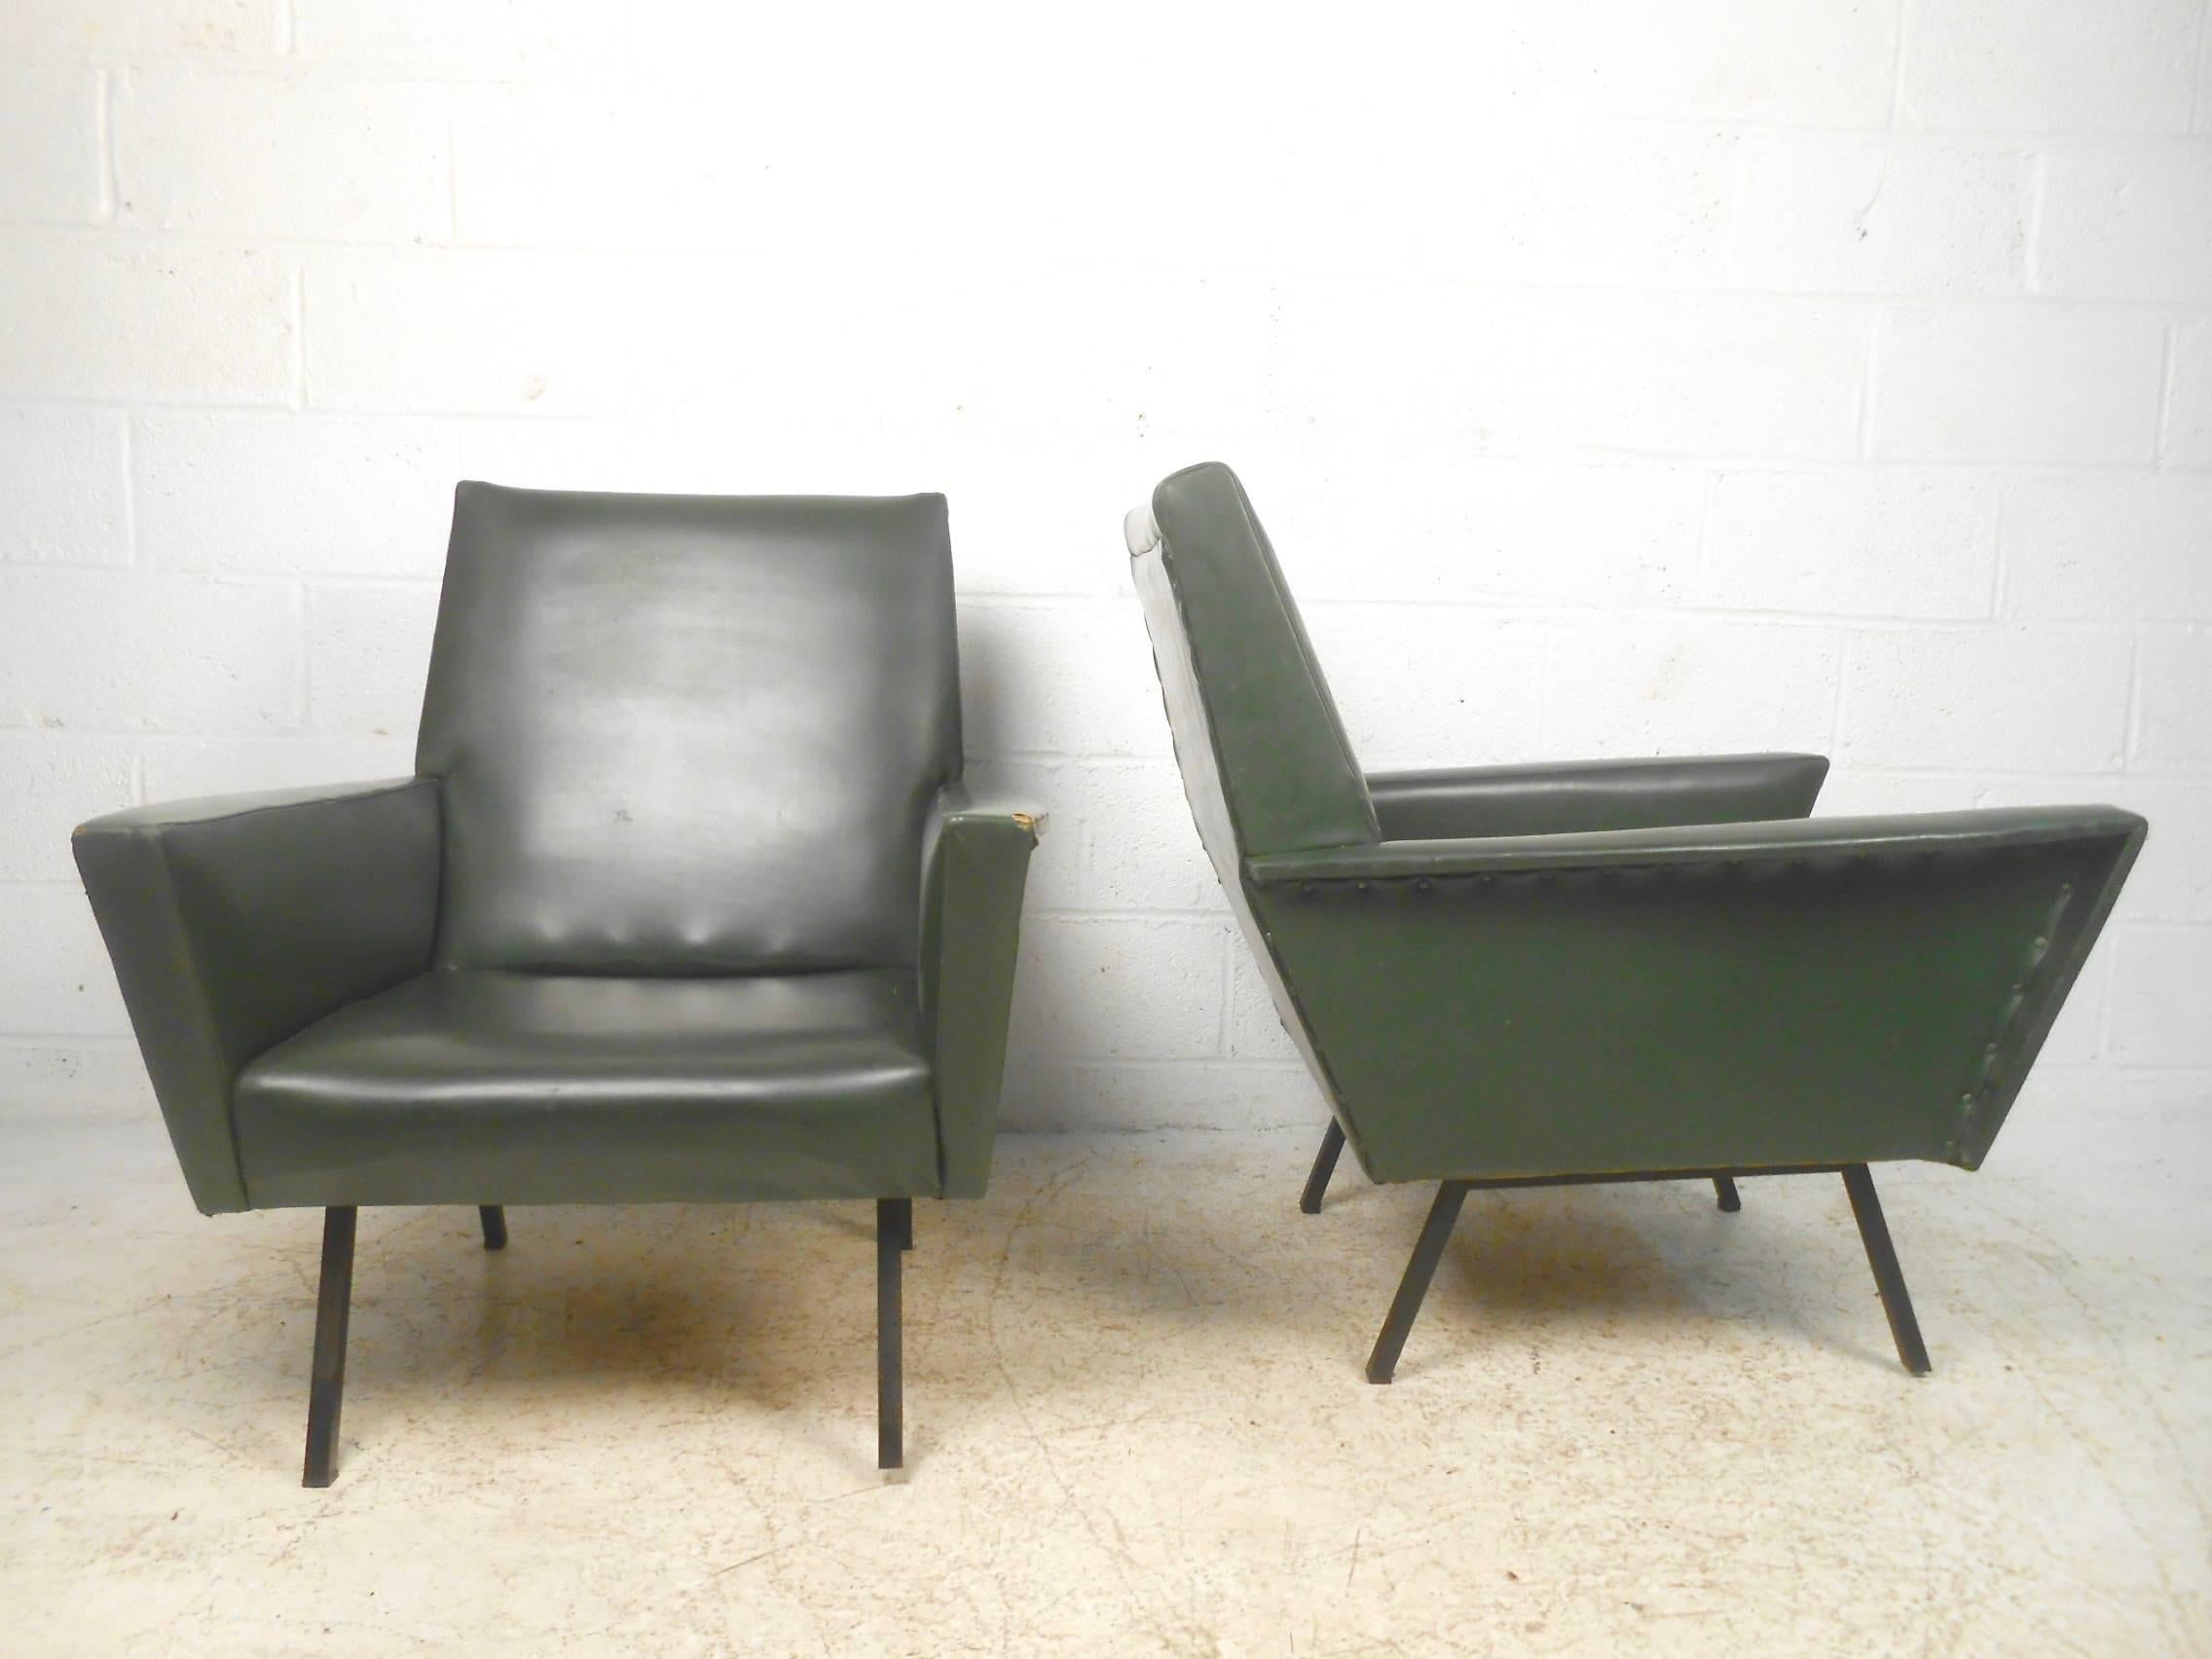 Cette paire élégante de chaises longues du milieu du siècle présente un design moderne danois vintage et comprend des pieds métalliques robustes, des accoudoirs ailés et des sièges à haut dossier rembourrés en vinyle. Paire élégante et statuaire de